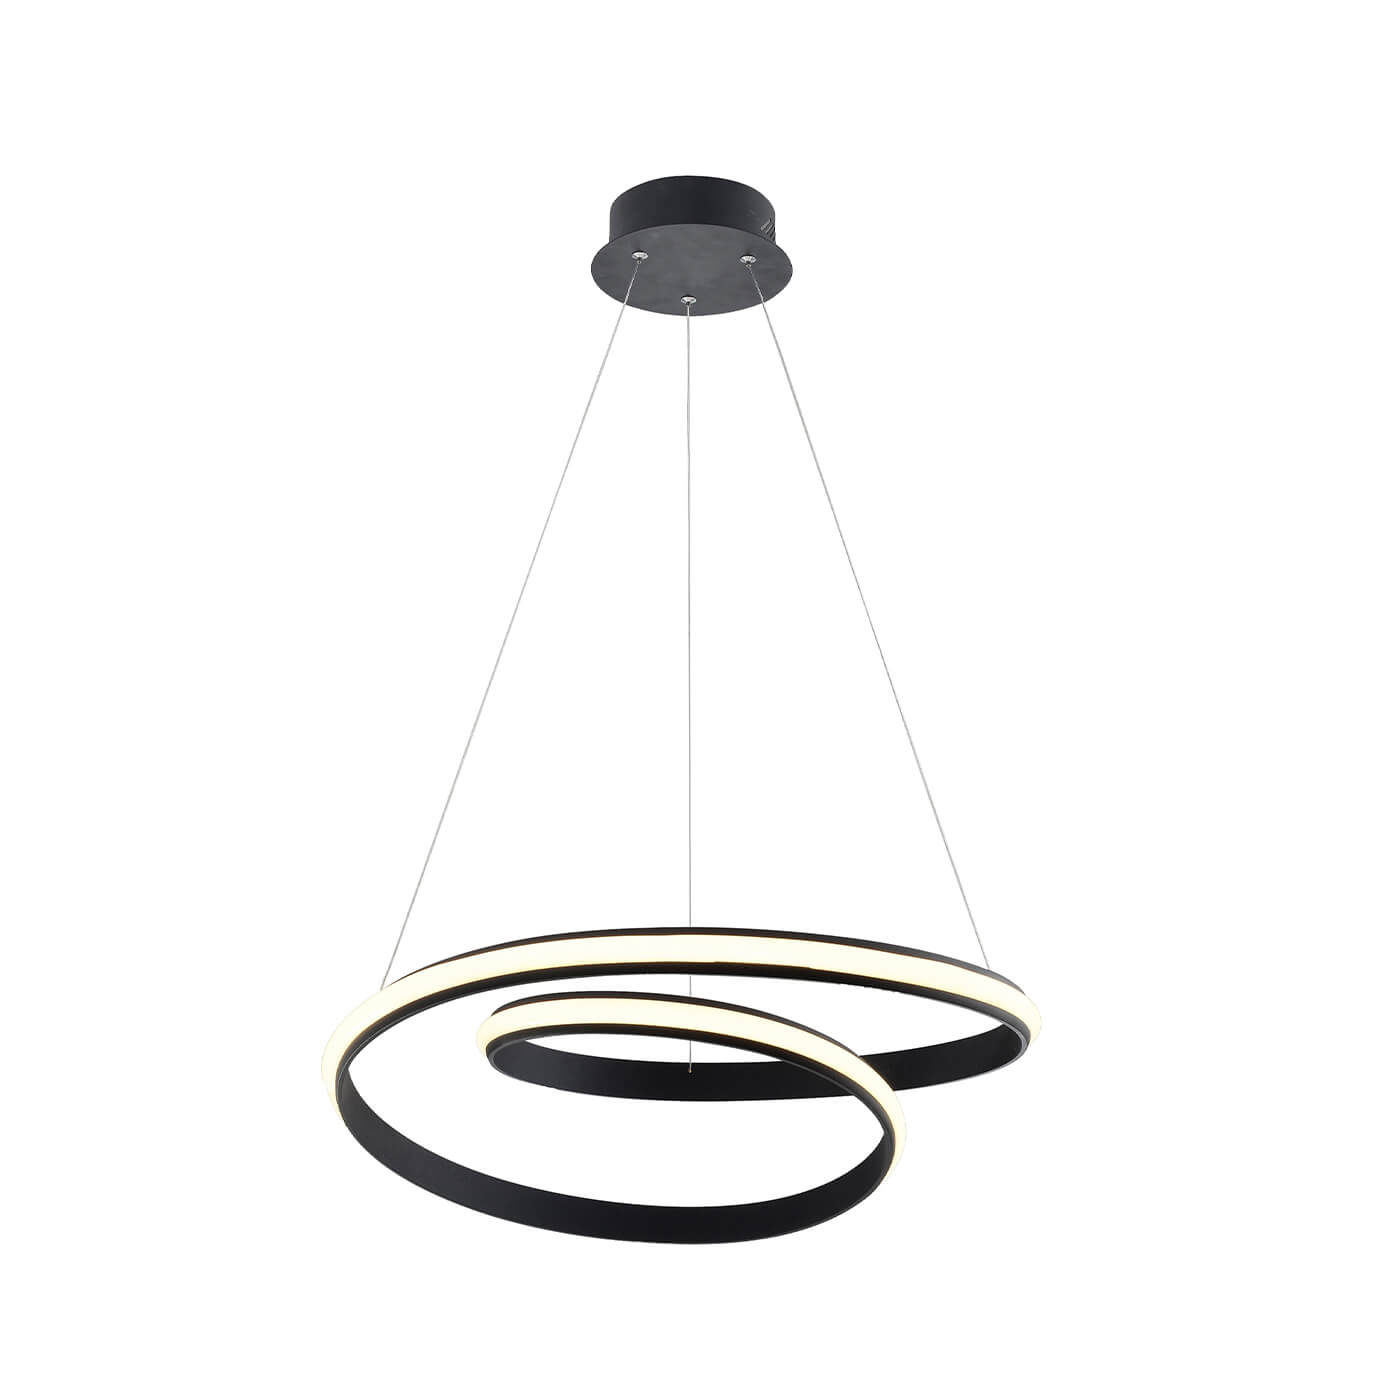 Cauti o lampa suspendata neagra SIGMA cu LED 30W, design futurist, minimalist, pentru living, dining sau dormitor din colectia de lustre si candelabre Domicilio?